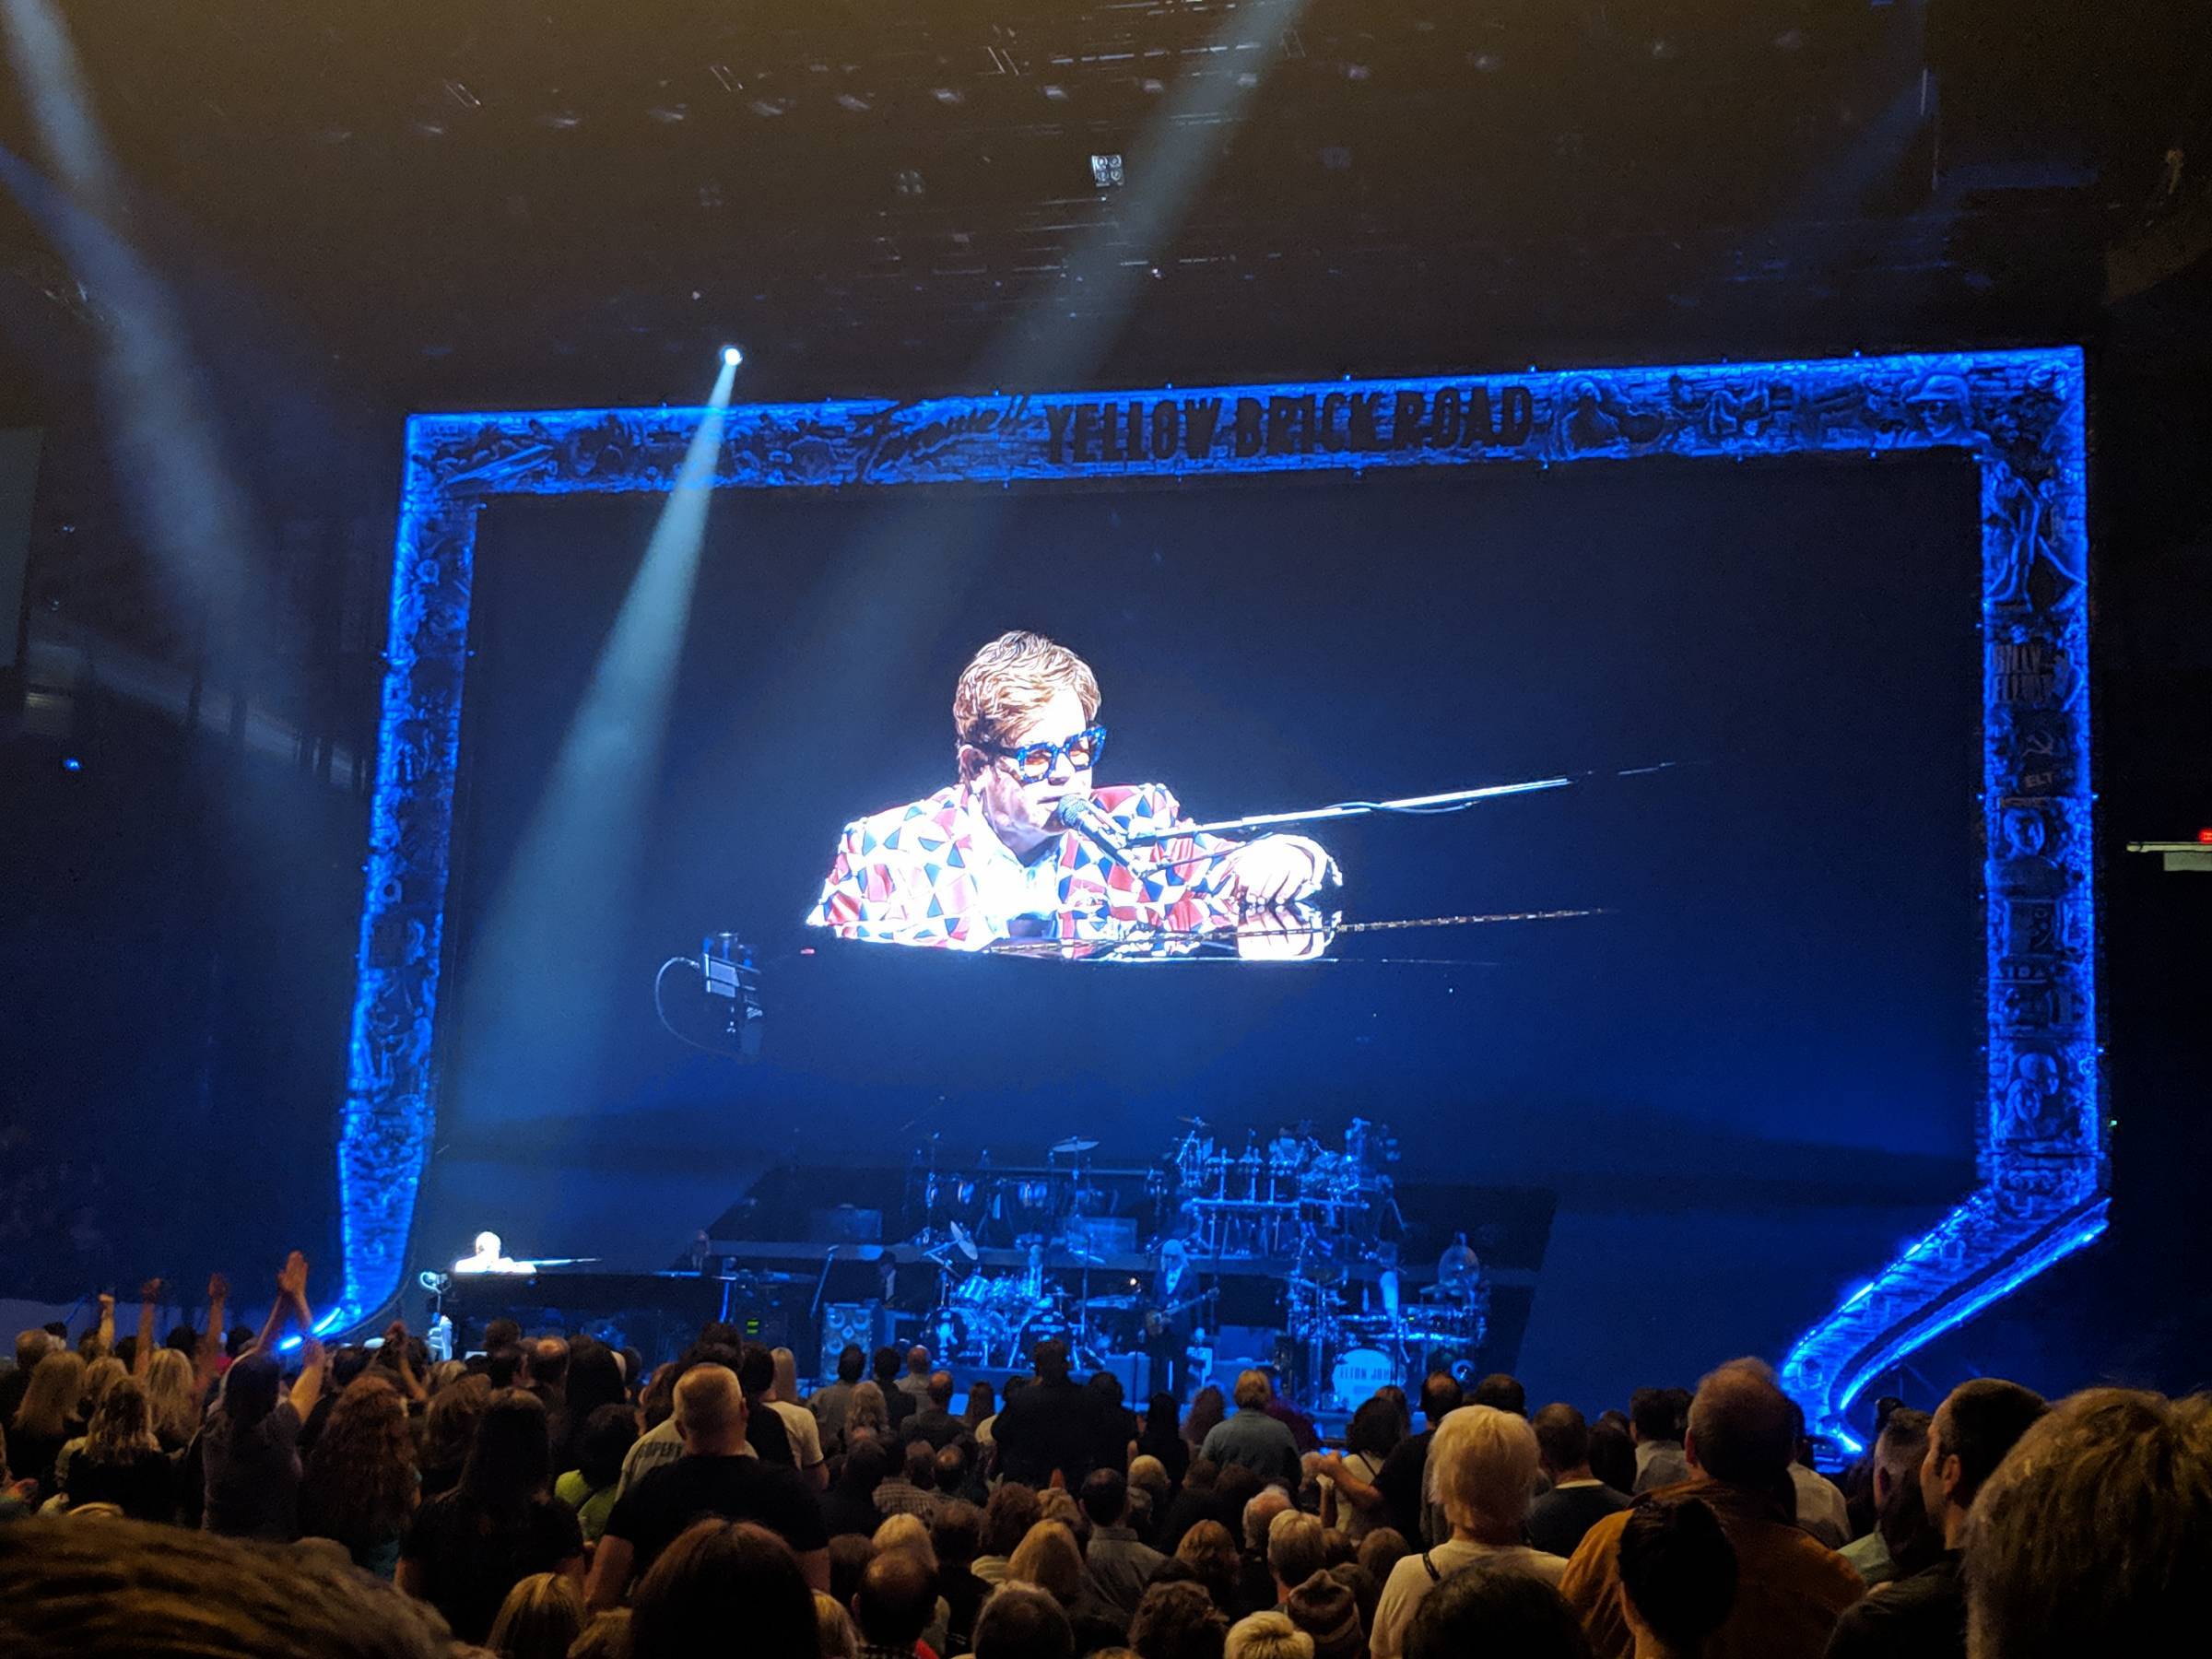 Elton John on stage